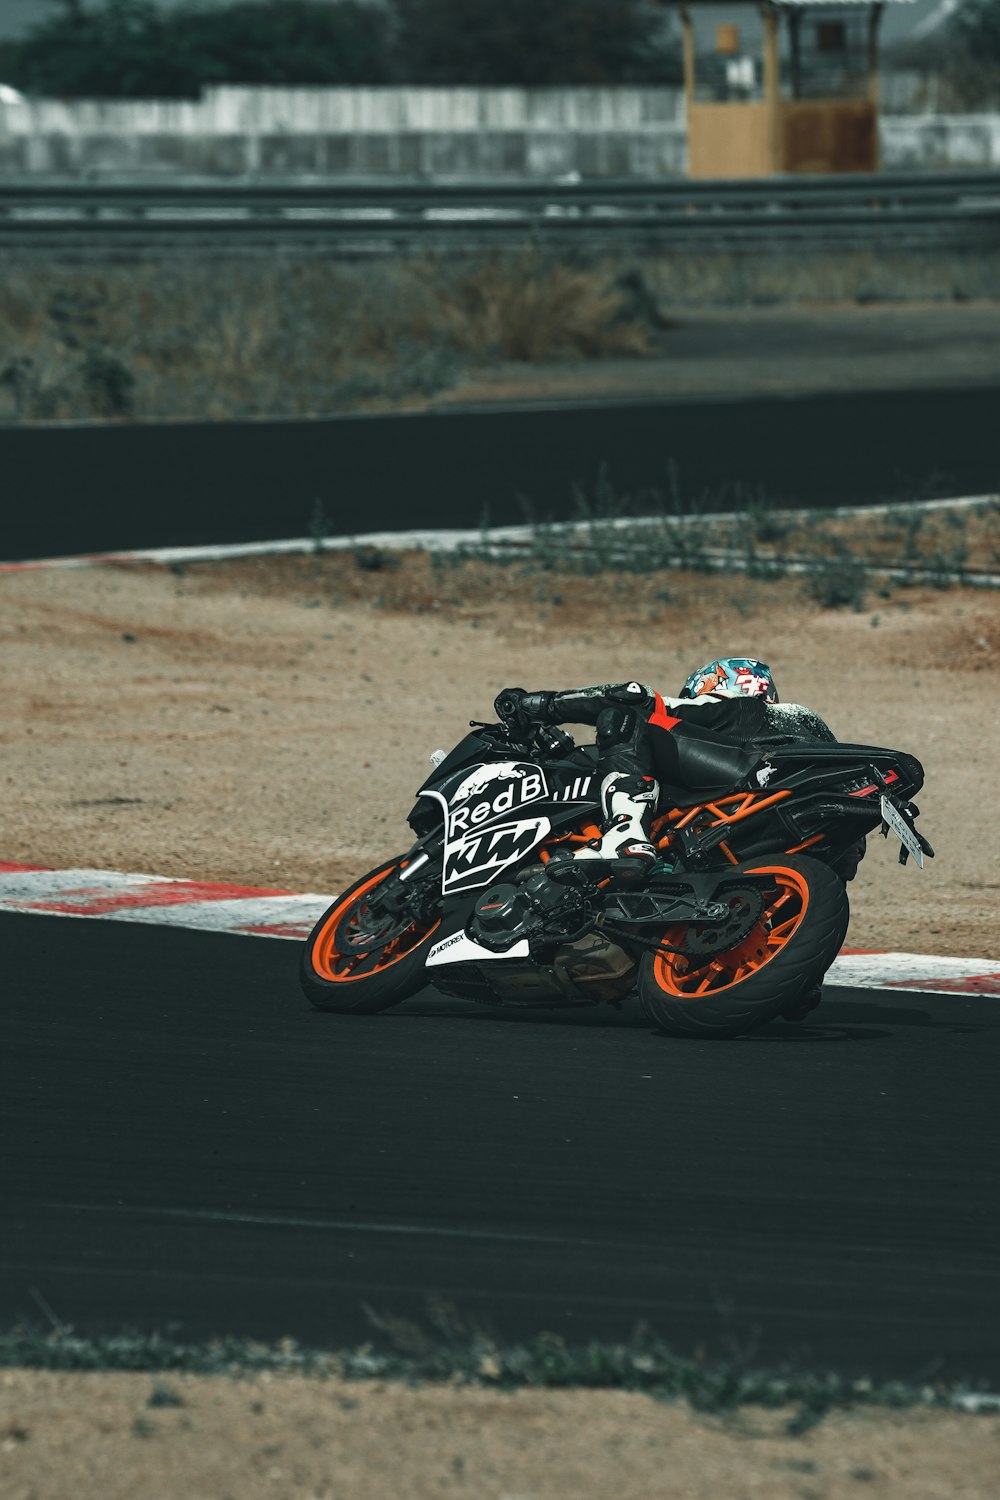 Homme en casque de moto noir et blanc roulant sur une moto de sport noire et orange